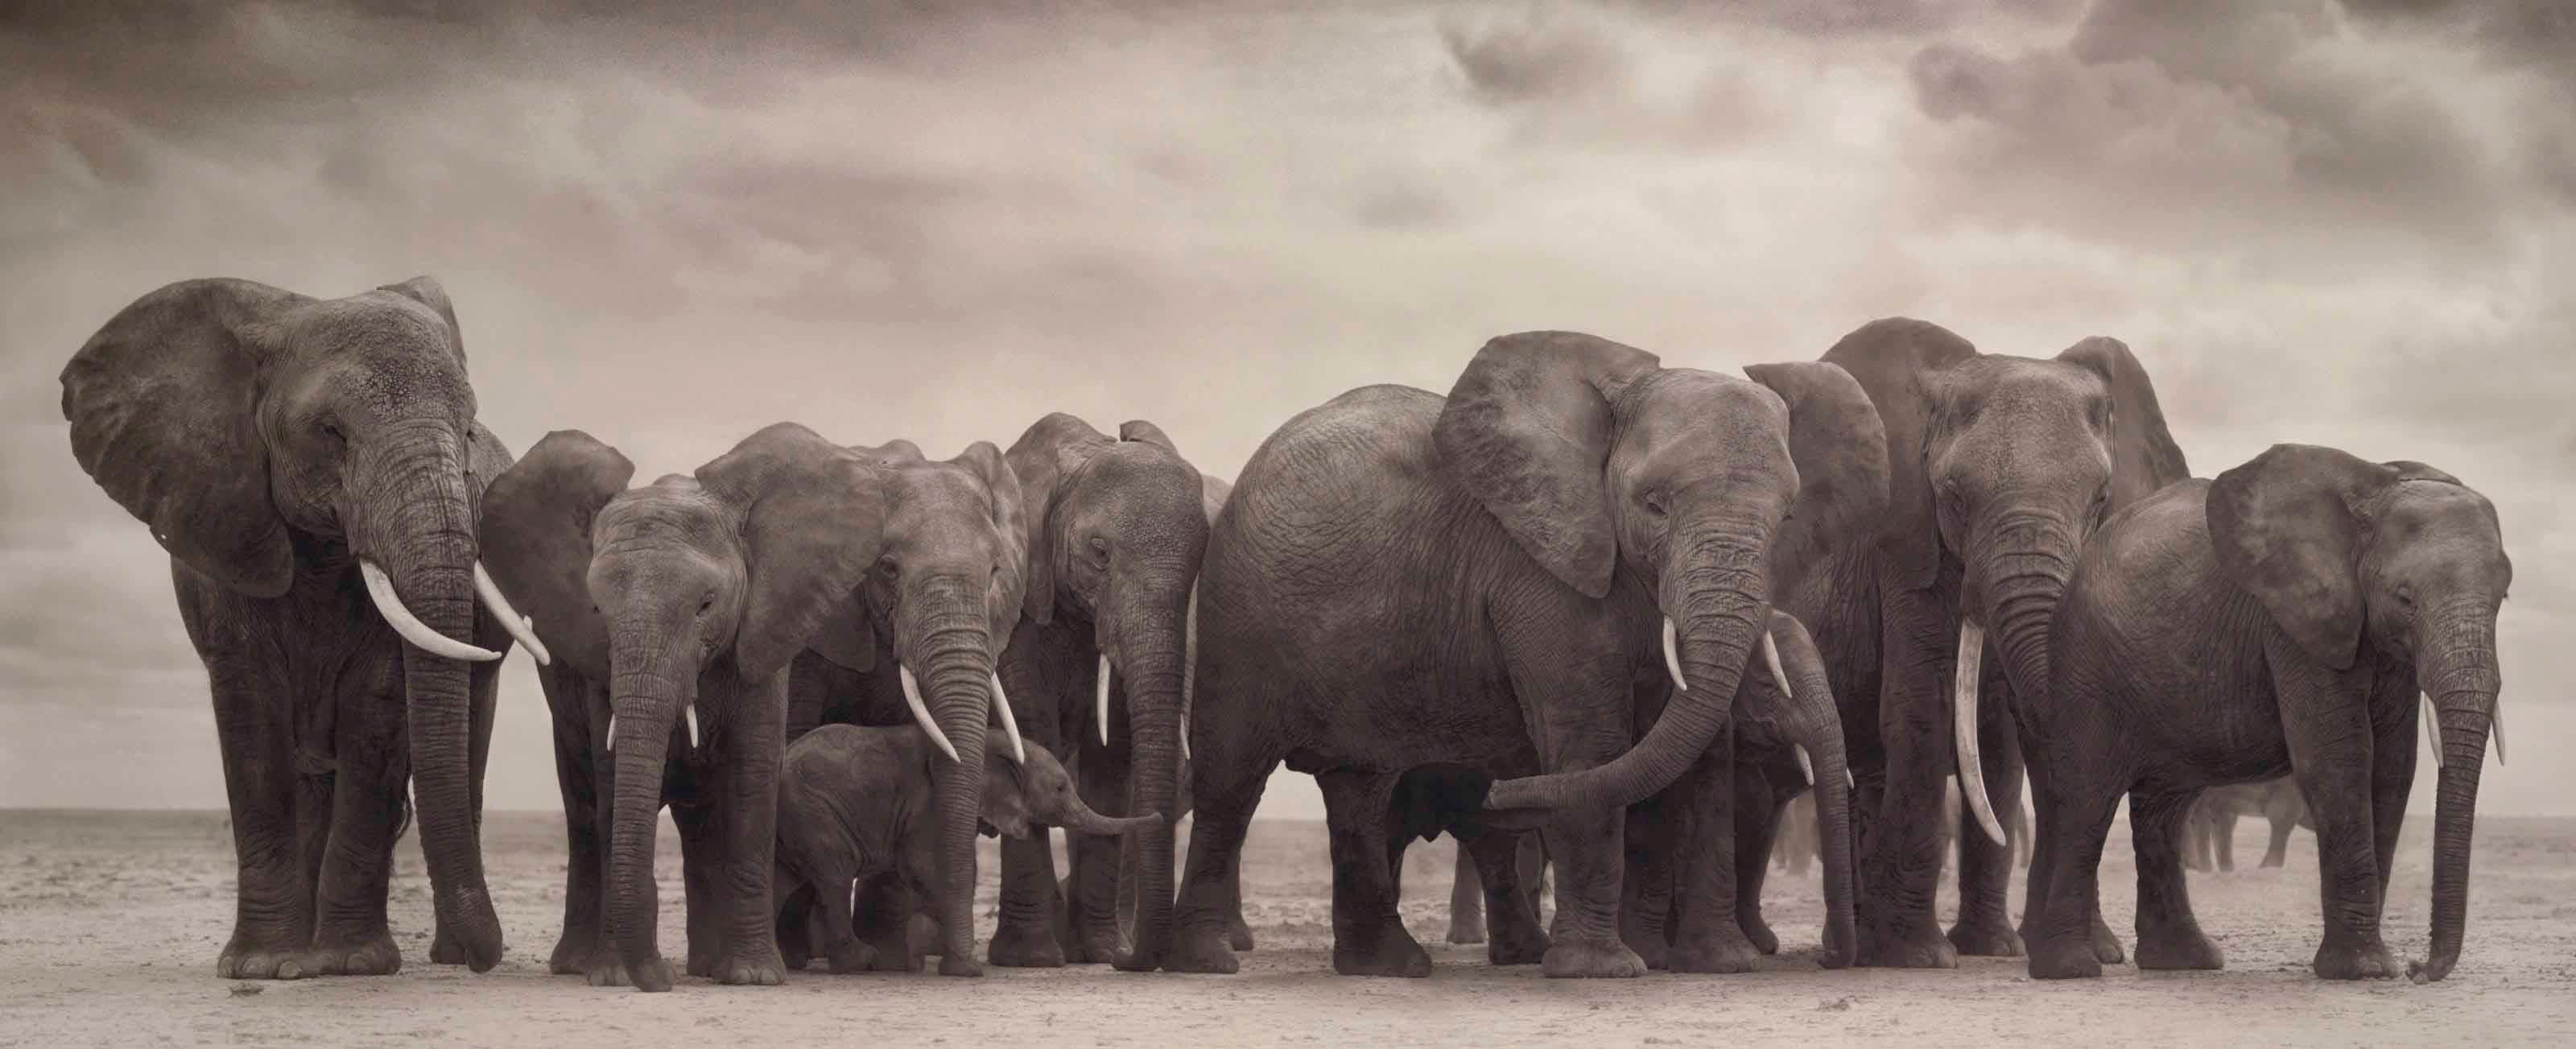 Groupe d'éléphants sur terre nue, Amboseli Nick Brandt, Afrique, Animal, Éléphant